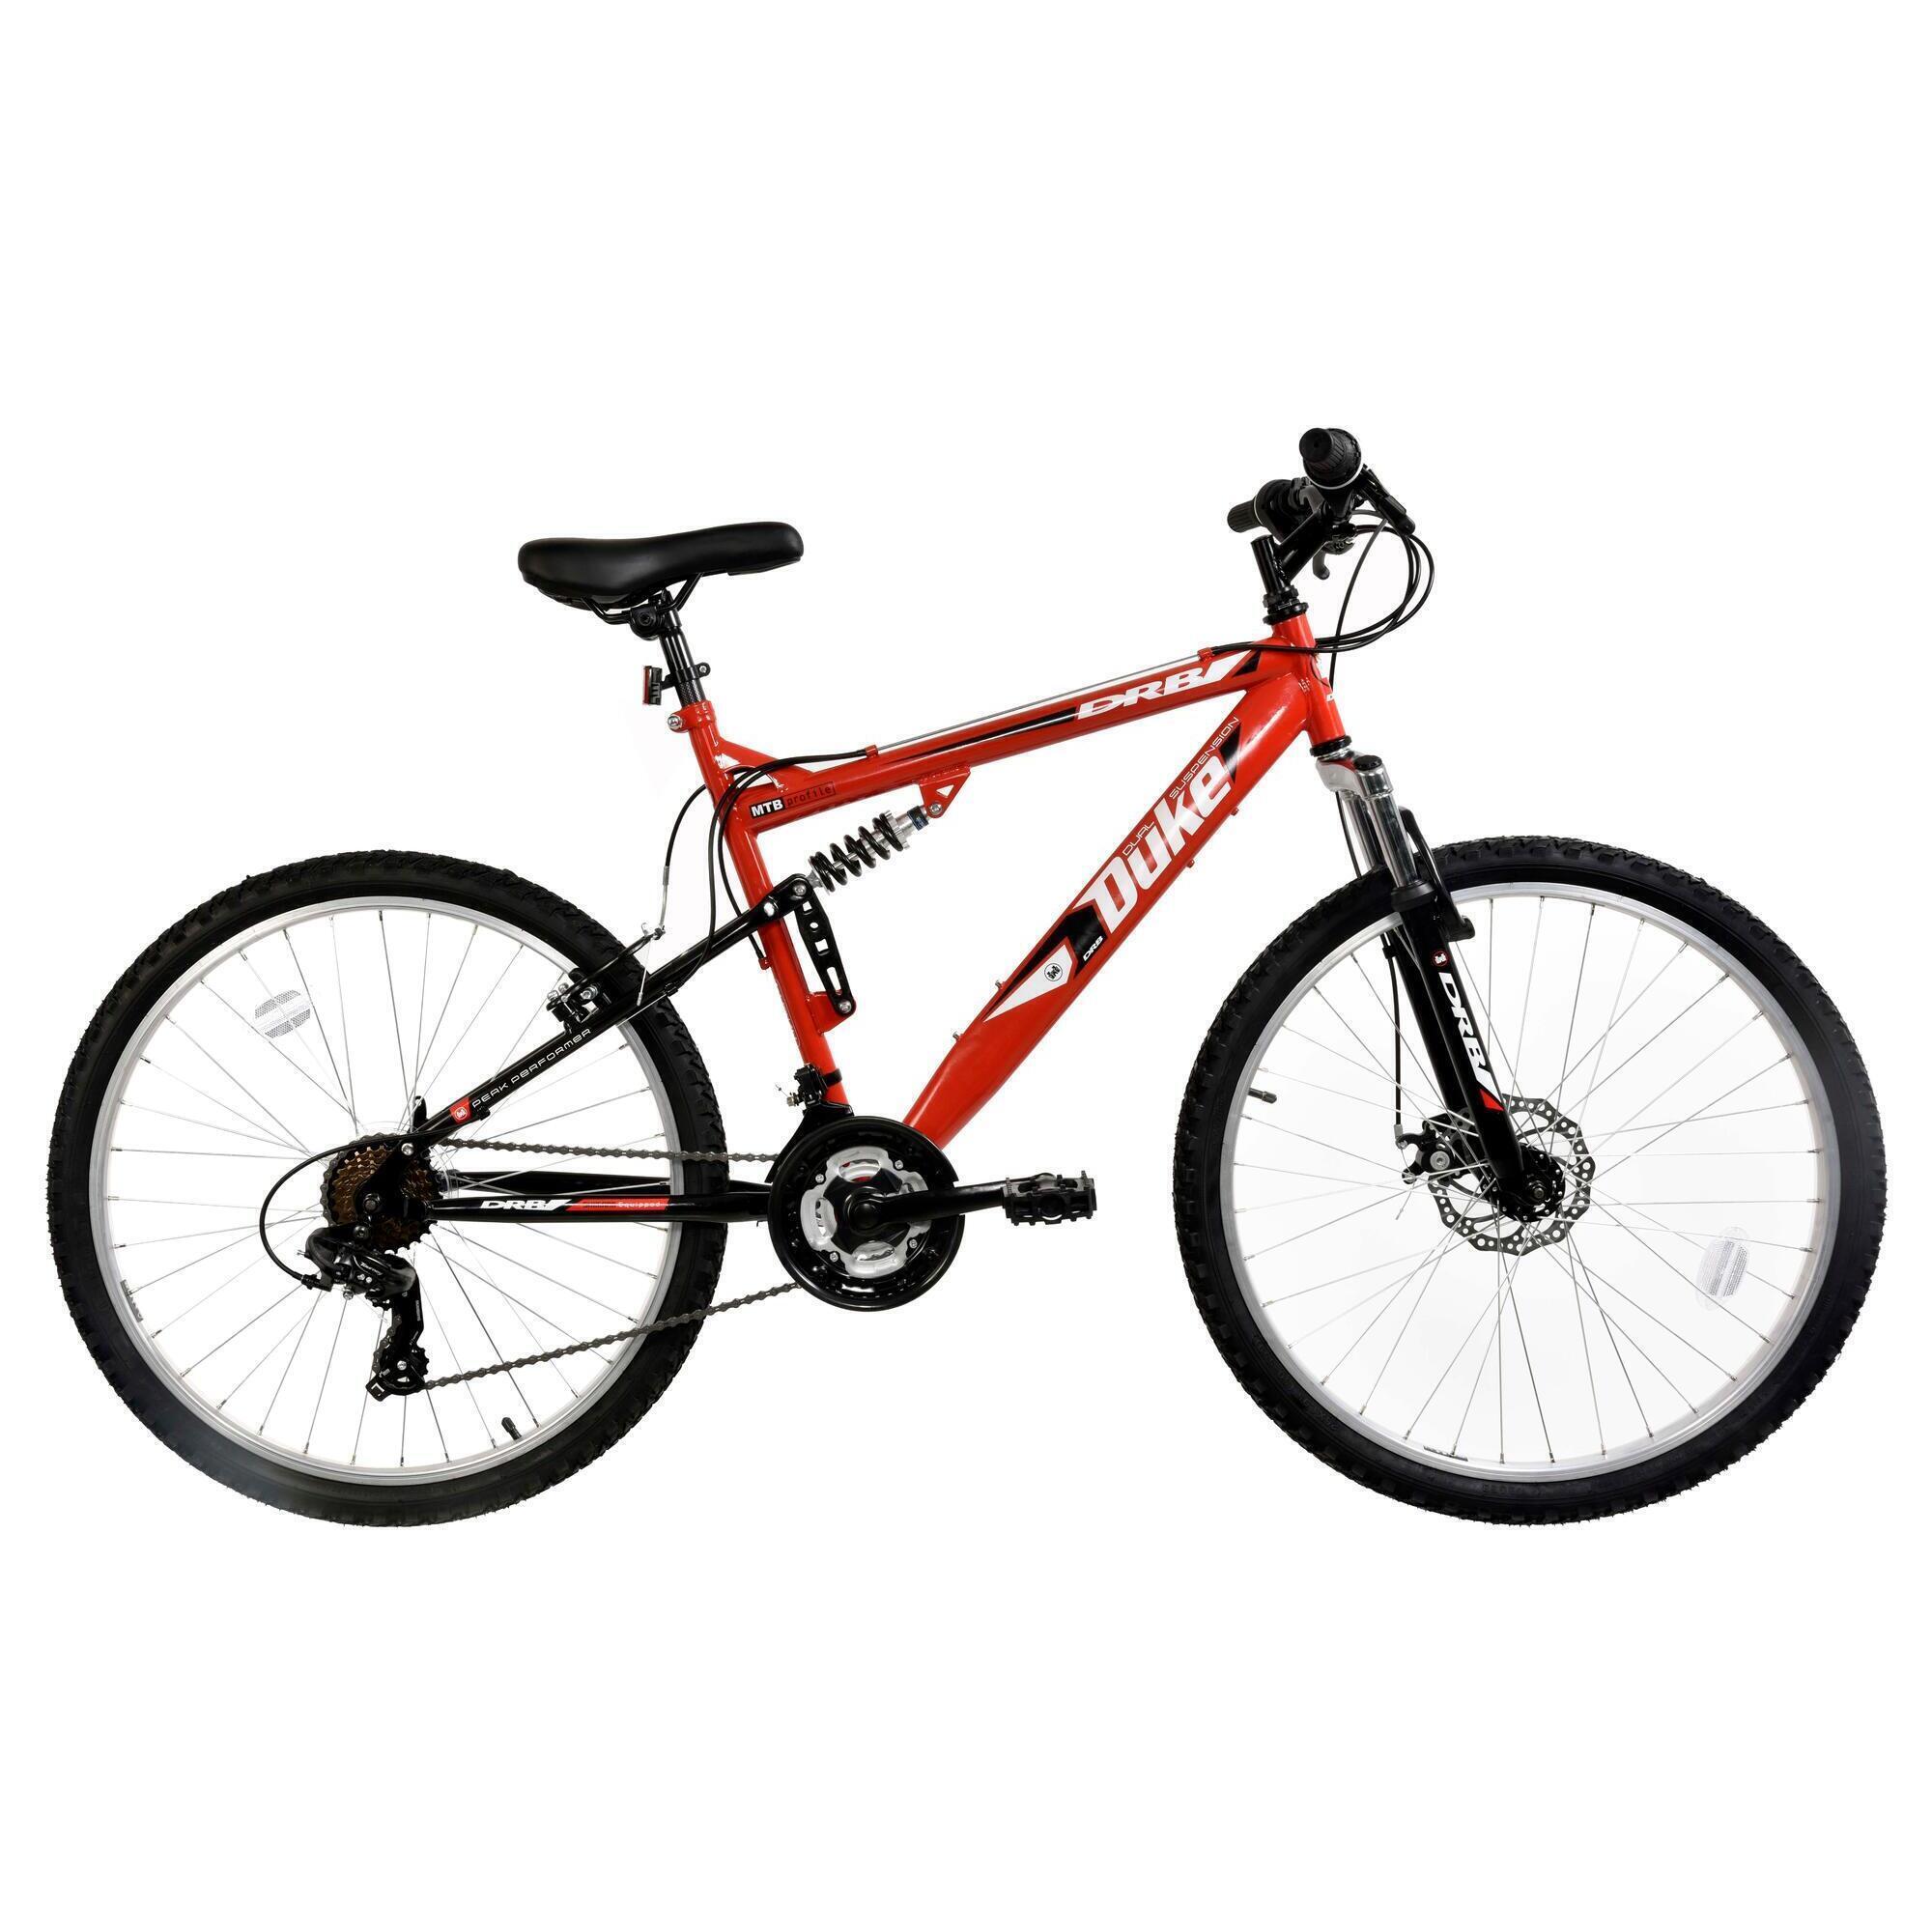 Dallingridge Duke Full Suspension Mountain Bike, 26" Wheel - Red/Black 1/5